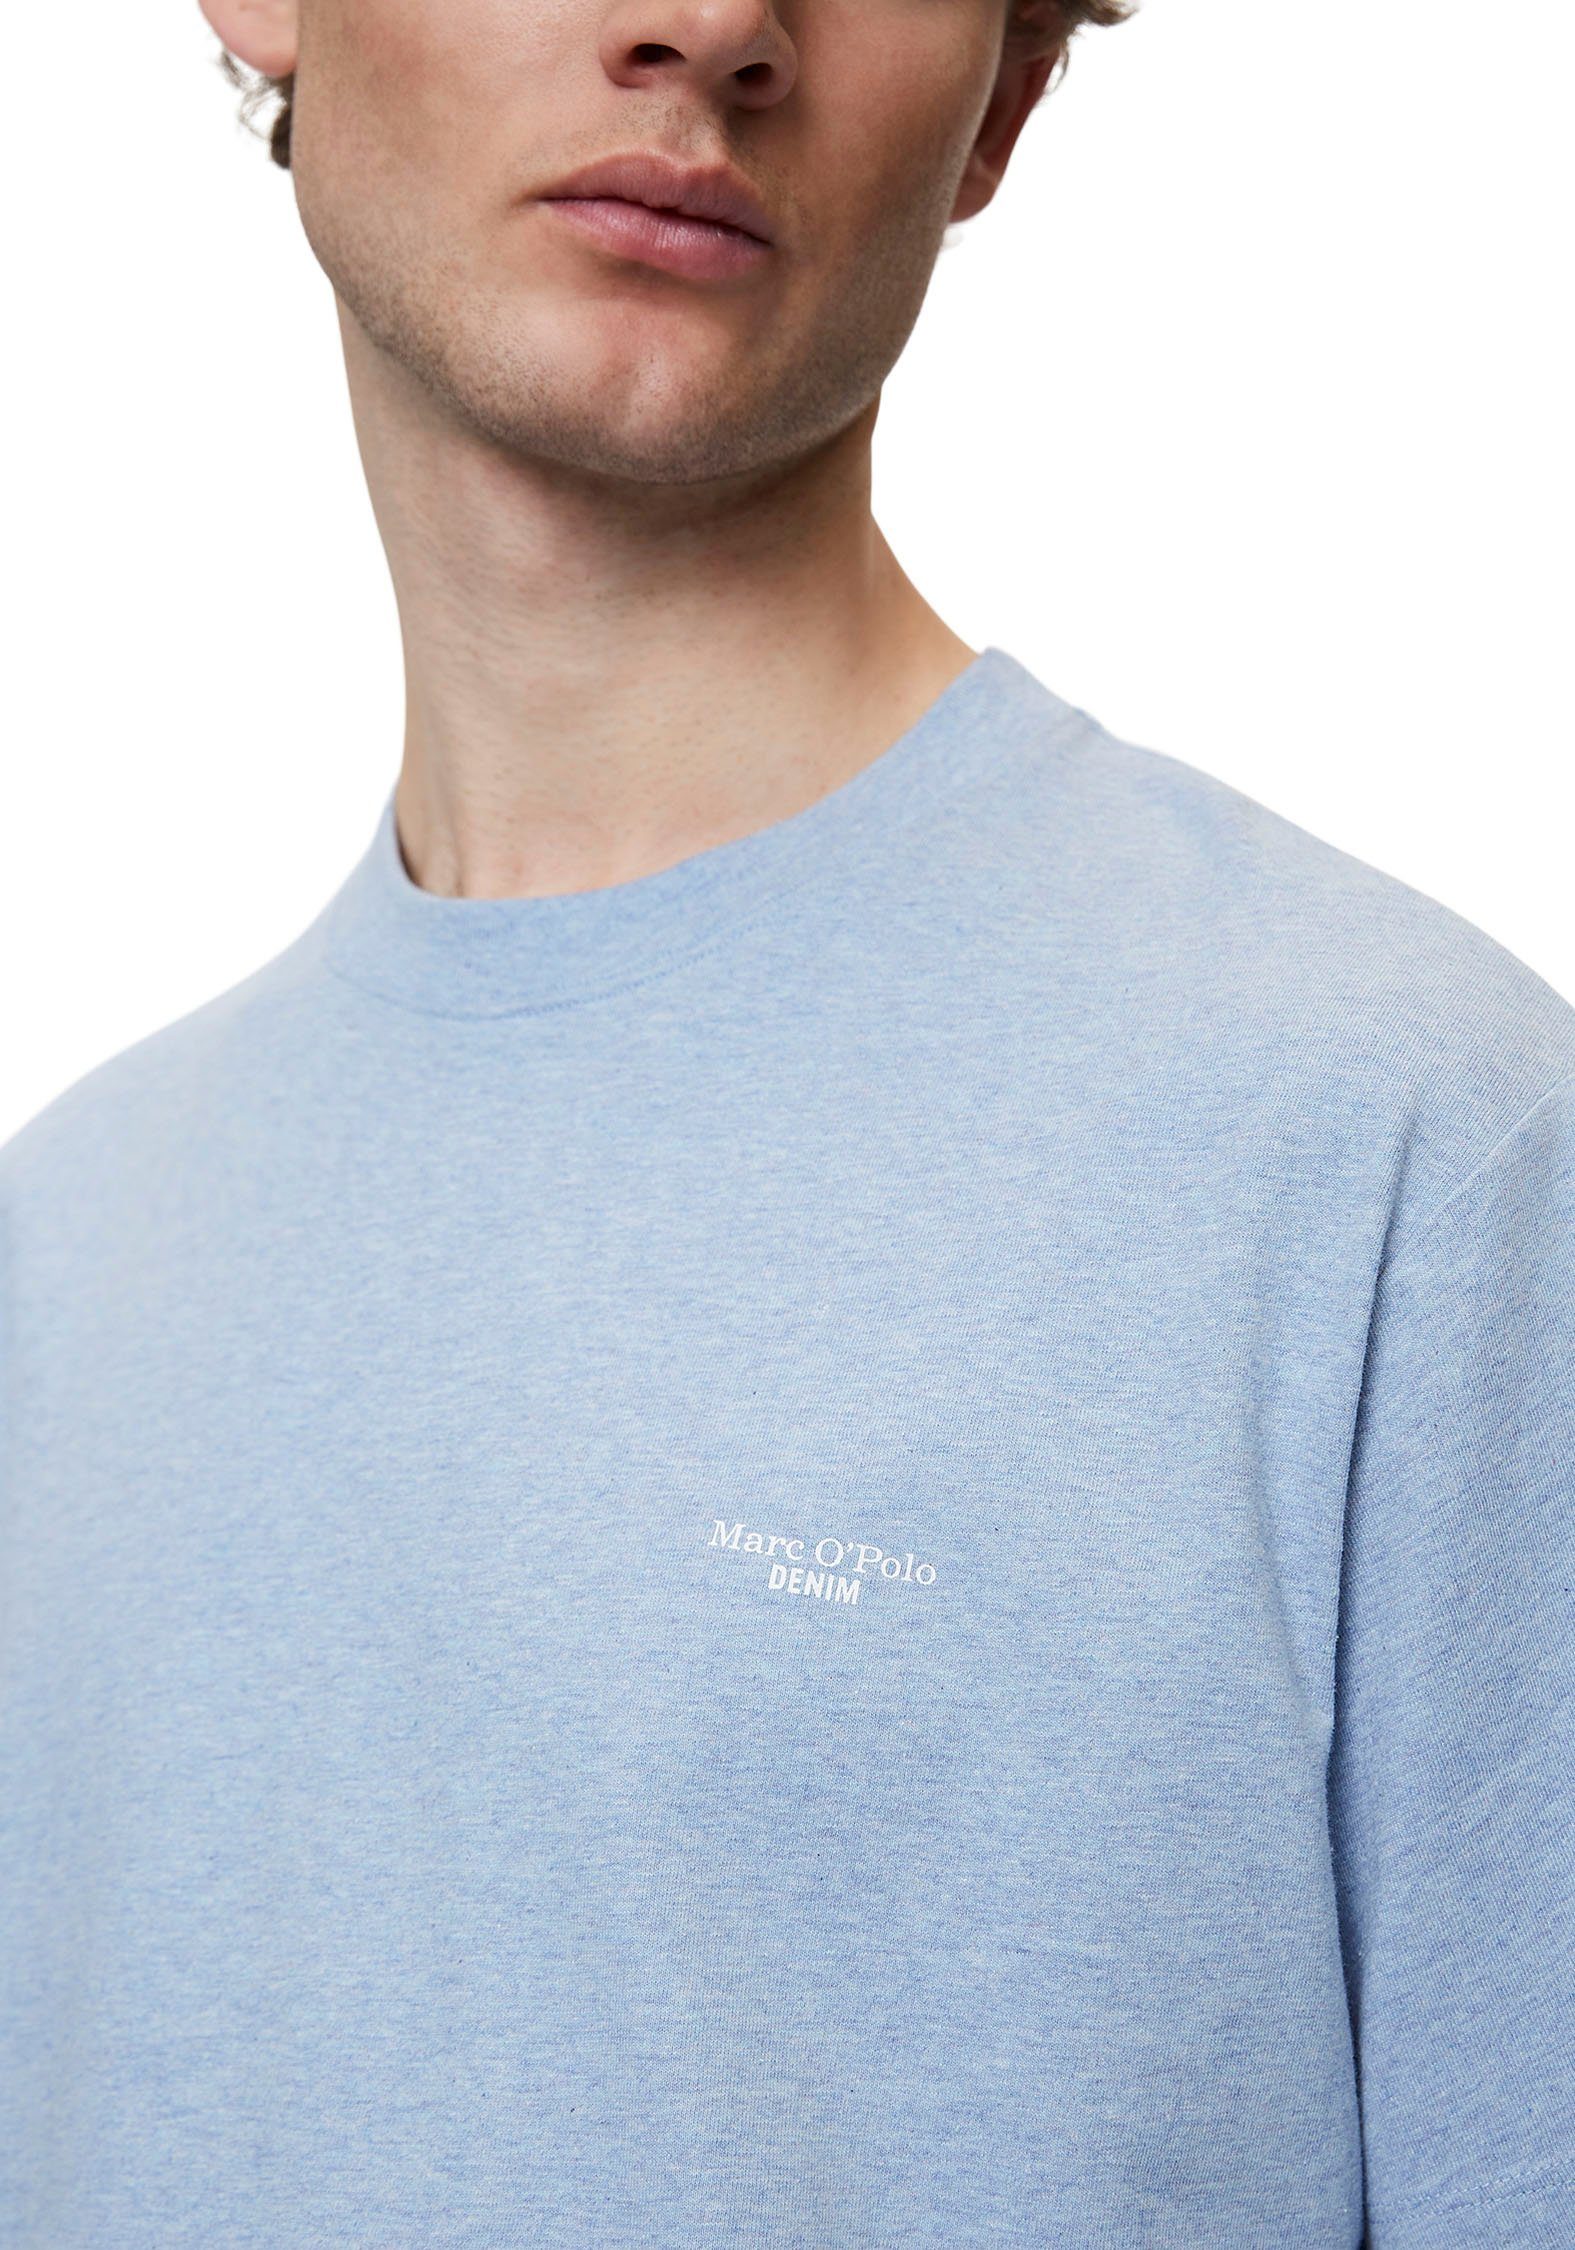 mit O'Polo T-Shirt Marc DENIM Label-Print hellblau Brusthöhe in